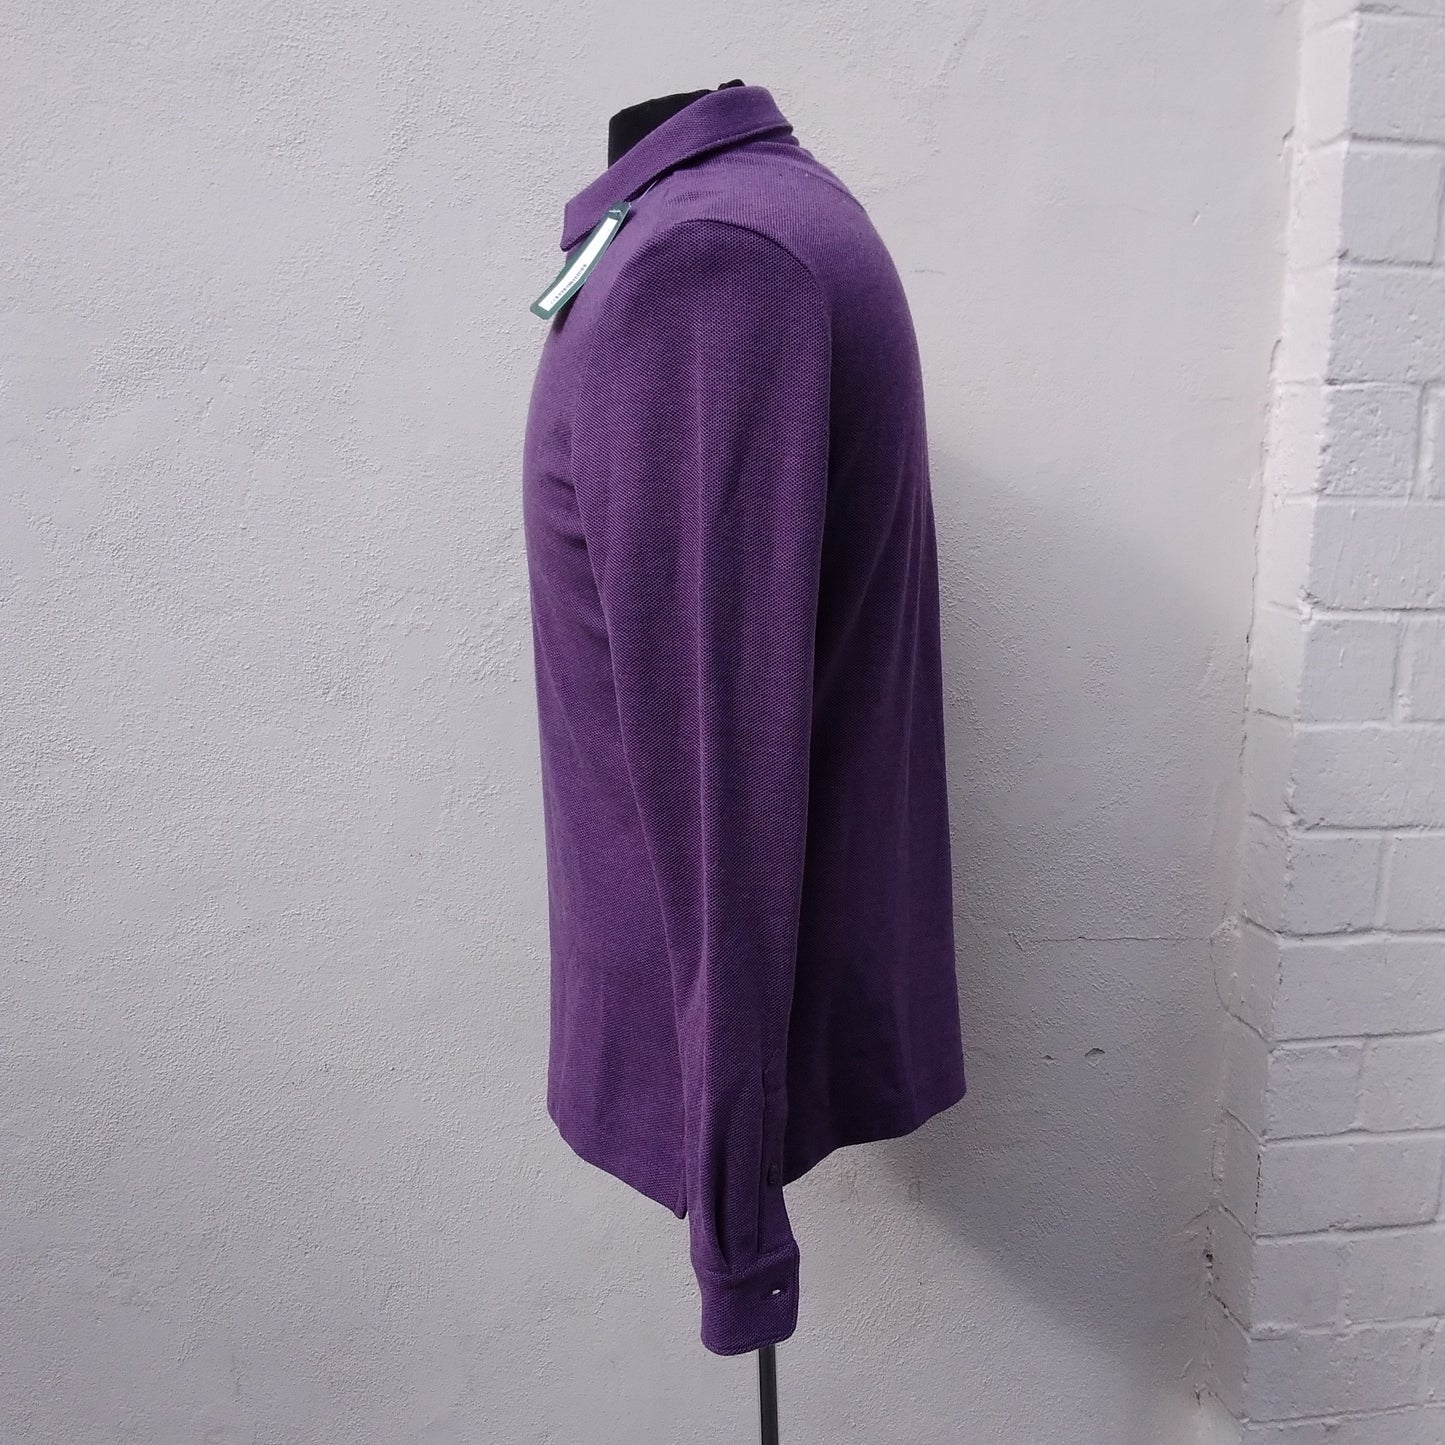 NWT - Fairlane purple Ronnie Long Sleeve Soft Pique Polo Shirt - S